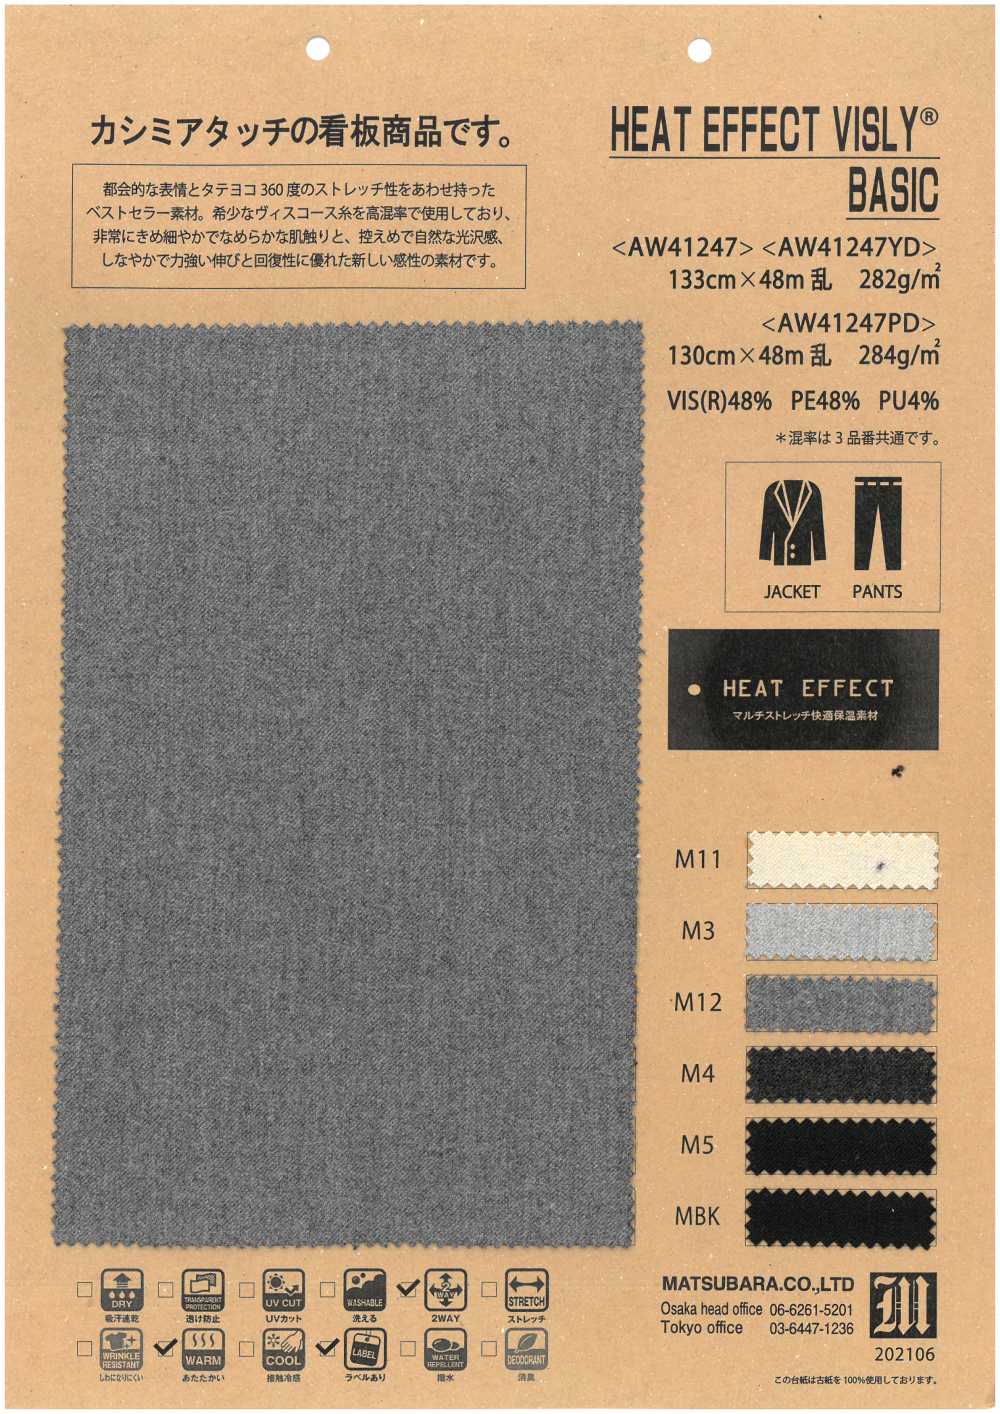 AW41247 Efecto Calor Bisley Basic[Fabrica Textil] Matsubara